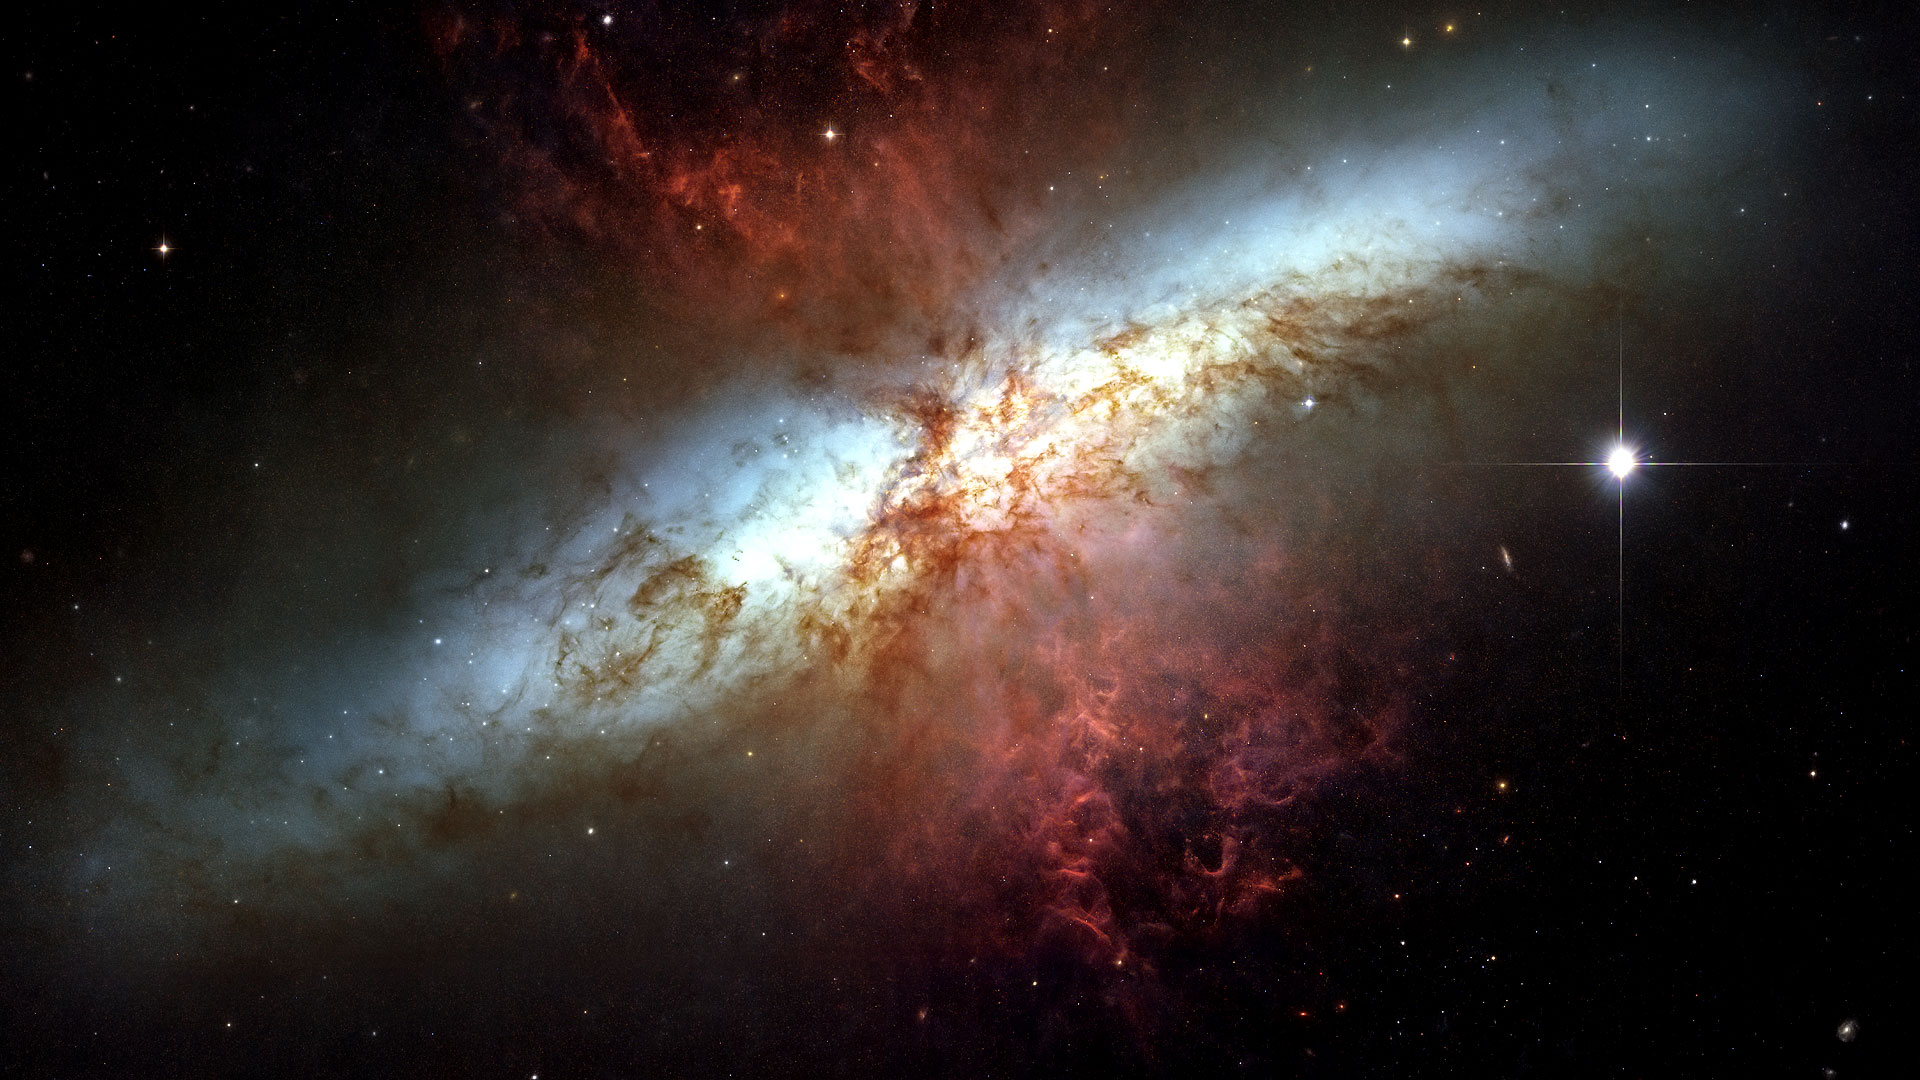 La galaxie du Cigare (M82), siège de l'explosion de supernovae